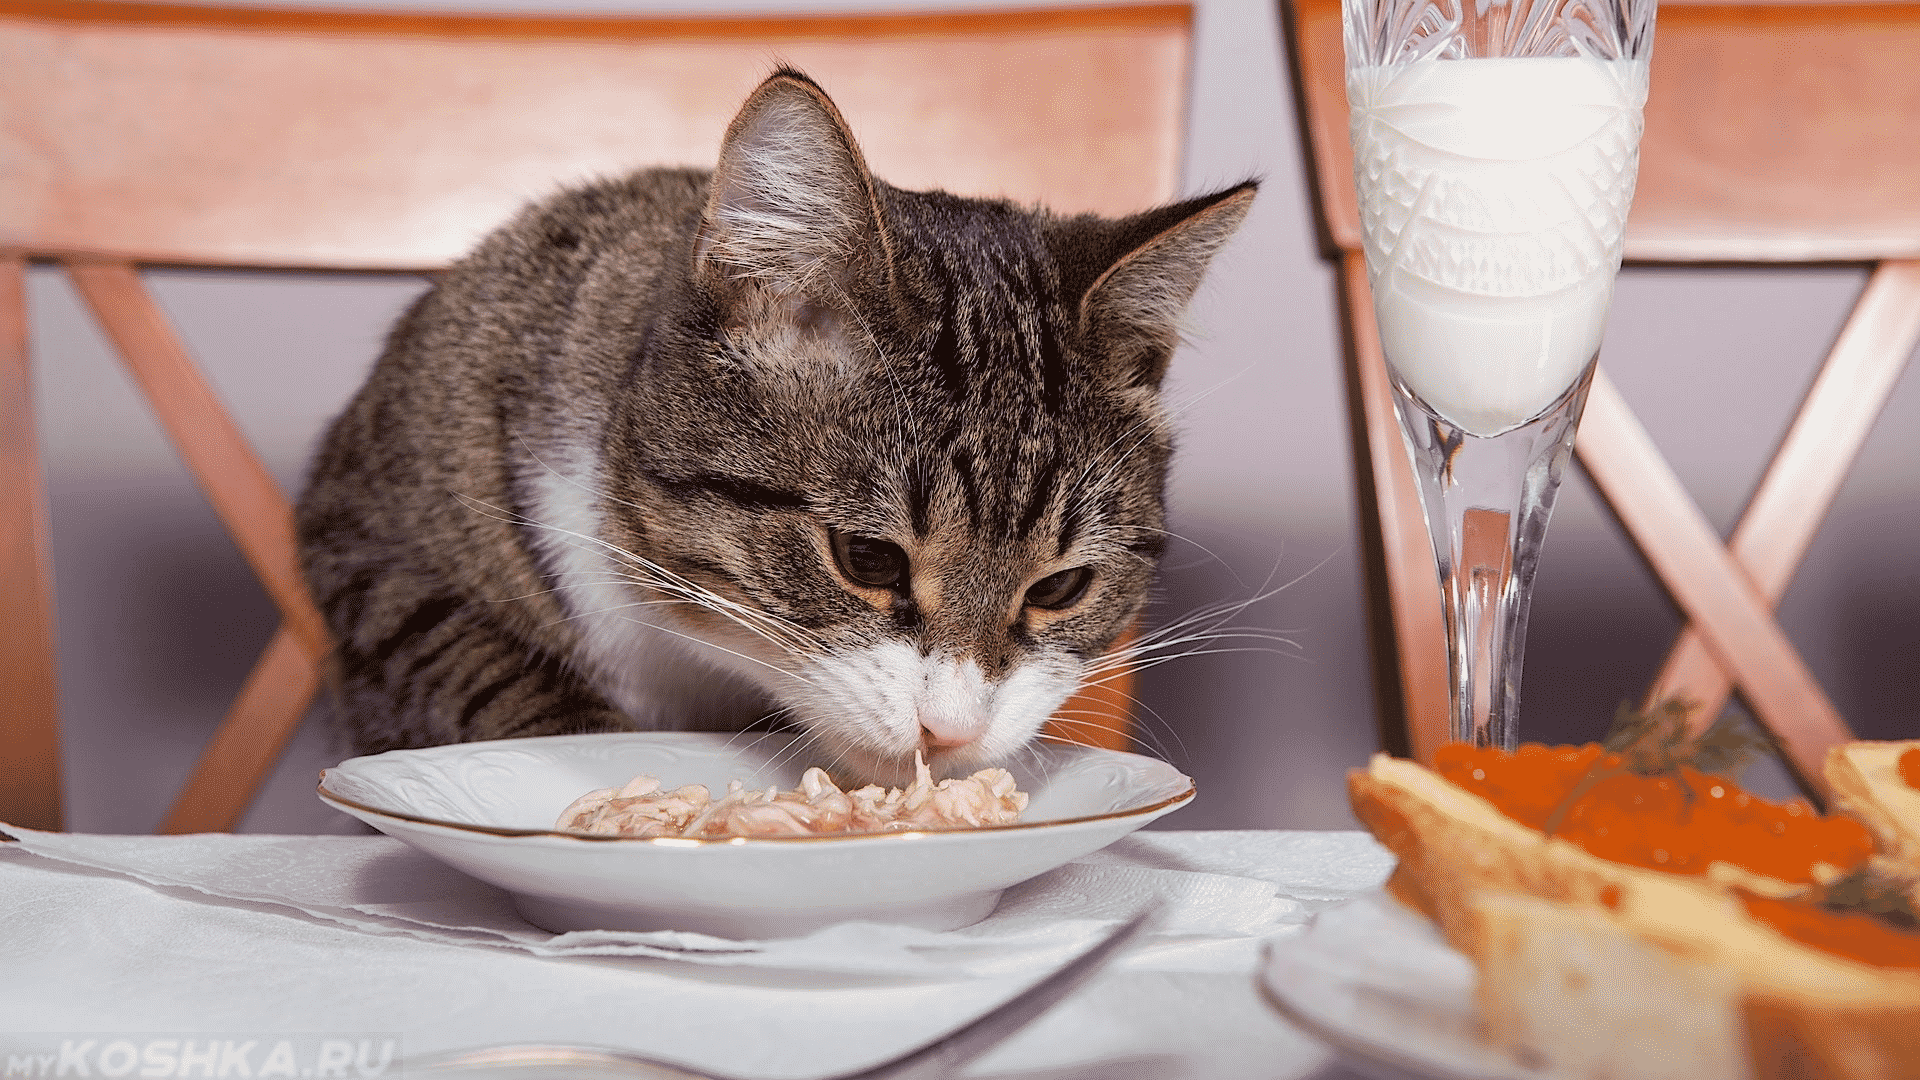 Нельзя кормить кошку со стола